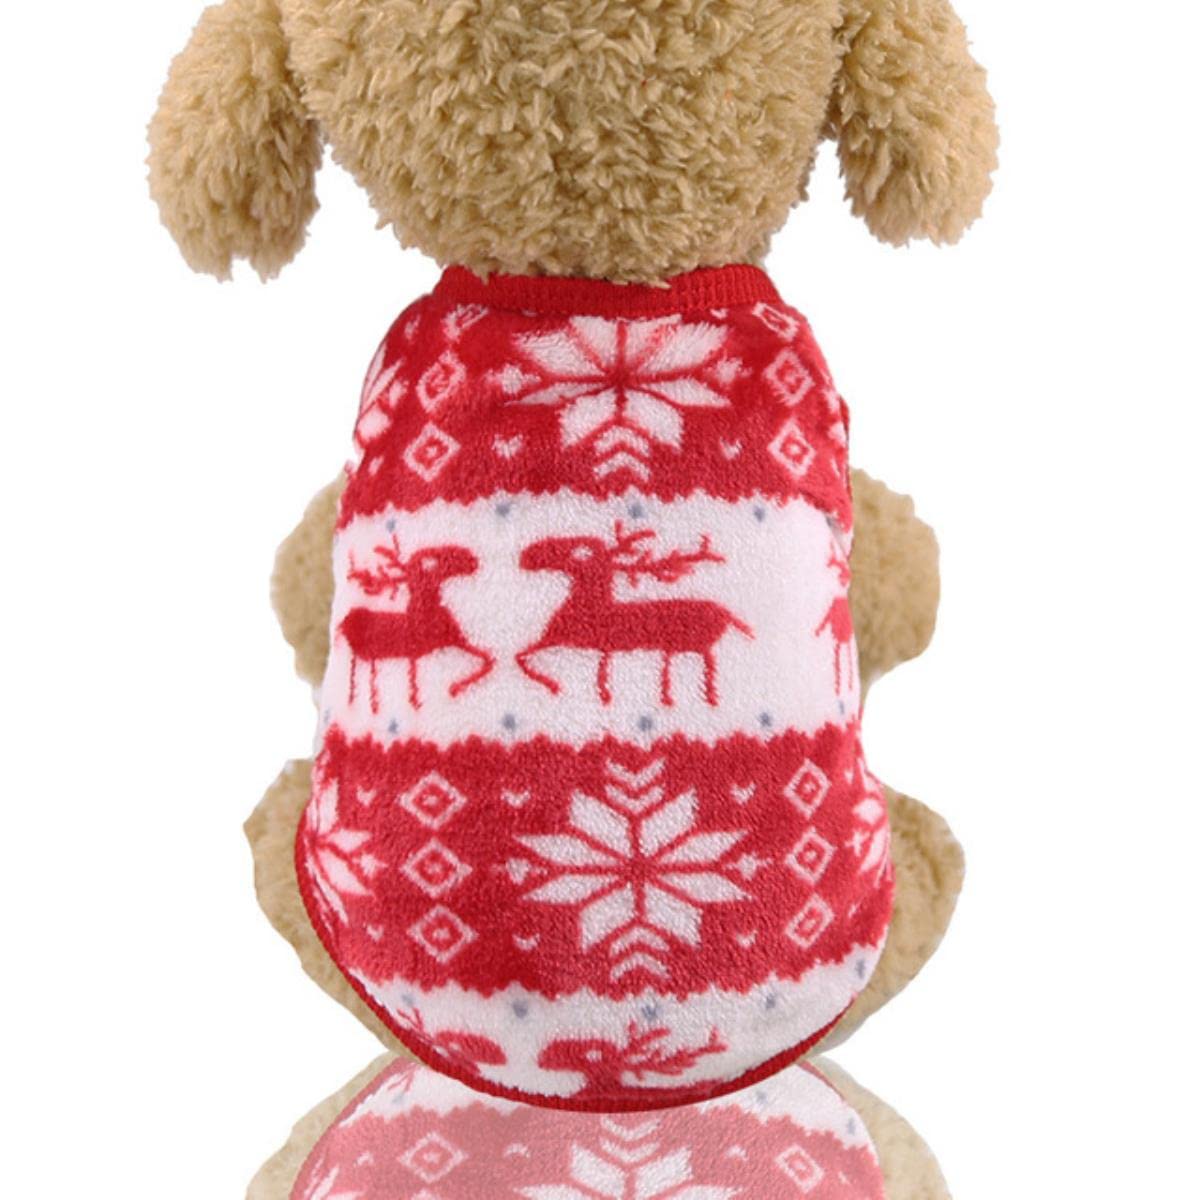 Weiche warme Haustier Hund Overalls Kleidung für Hunde Pyjamas Fleece Kleiner Welpenmantel Haustier Outfits Hoodie Kleidung Katzen Kleidung Weihnachten